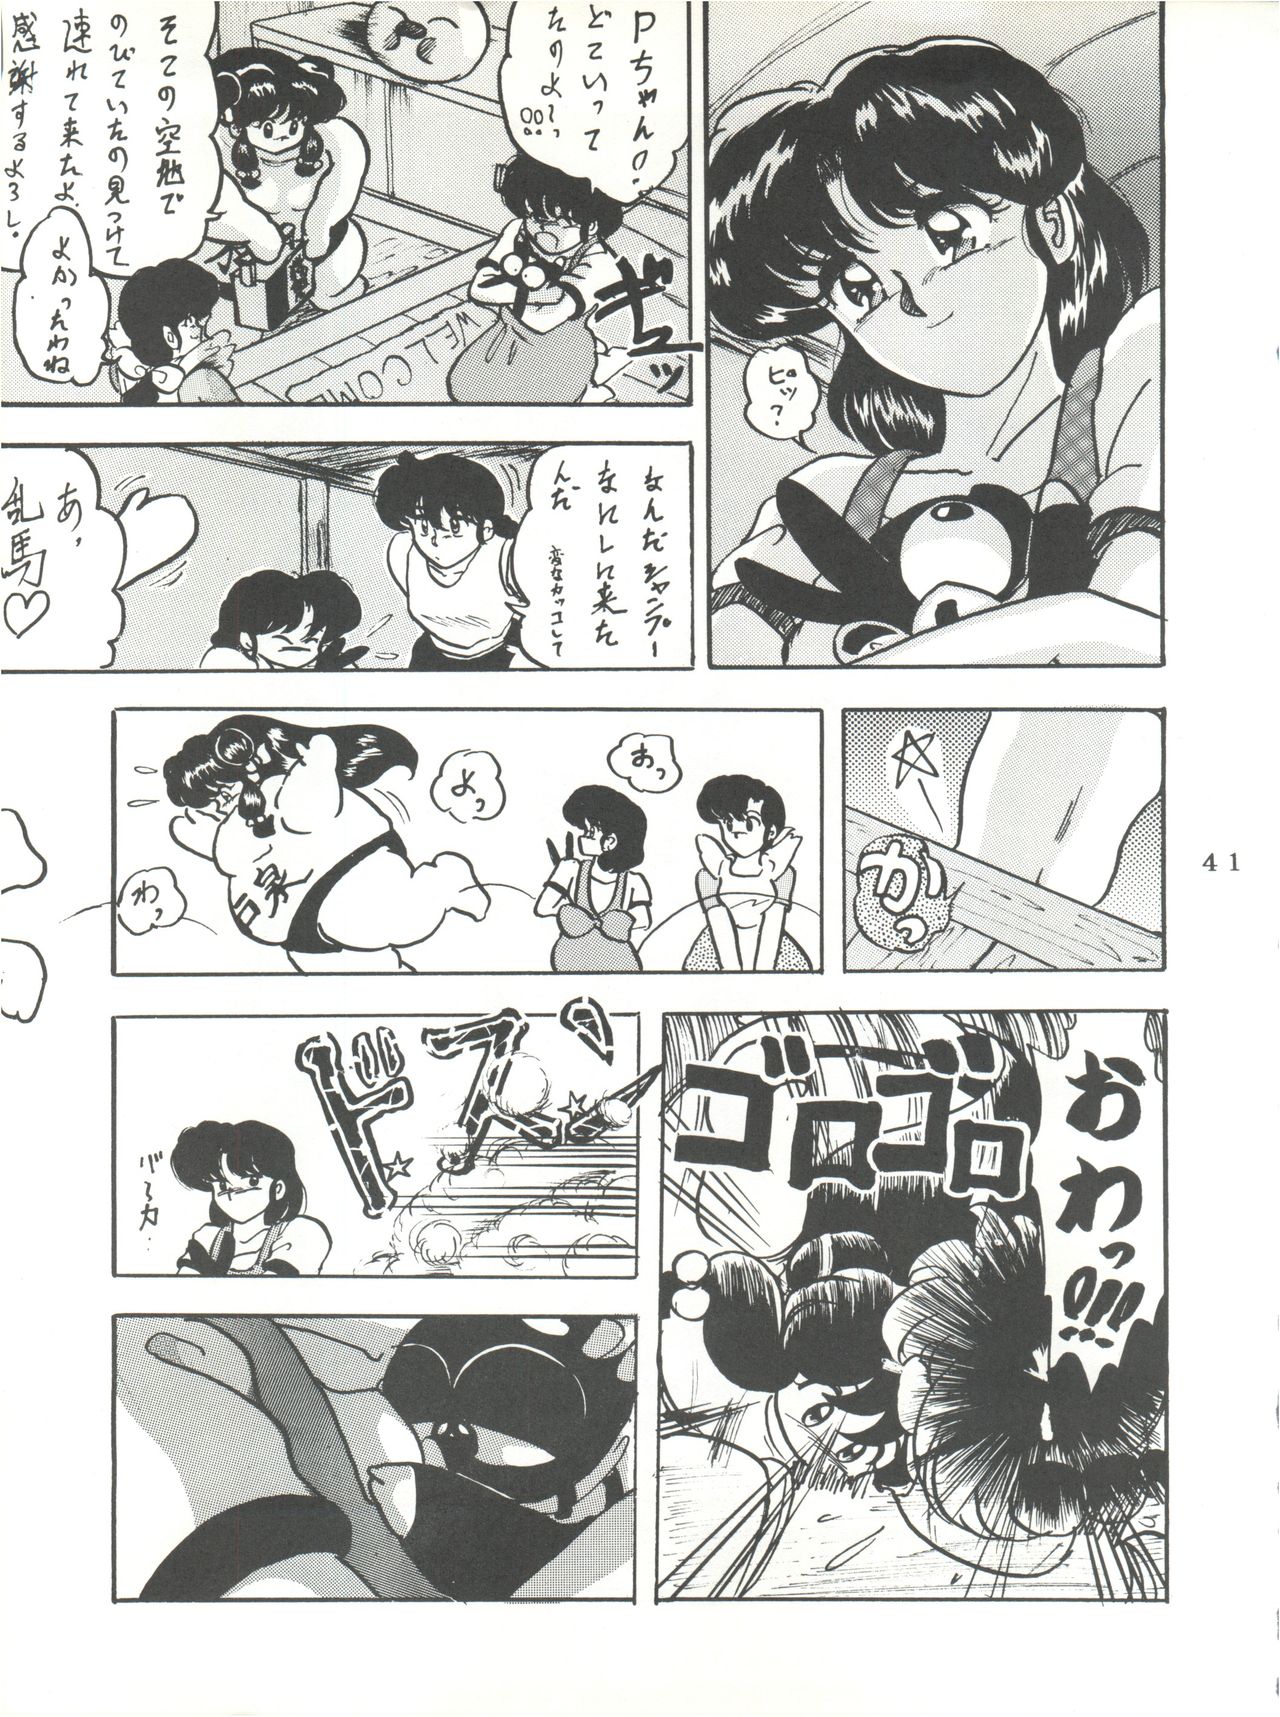 [L-Gauge Sha (Shouryuu)] WA 2 (Ranma 1/2, Bastard) [1993-10-03] page 40 full